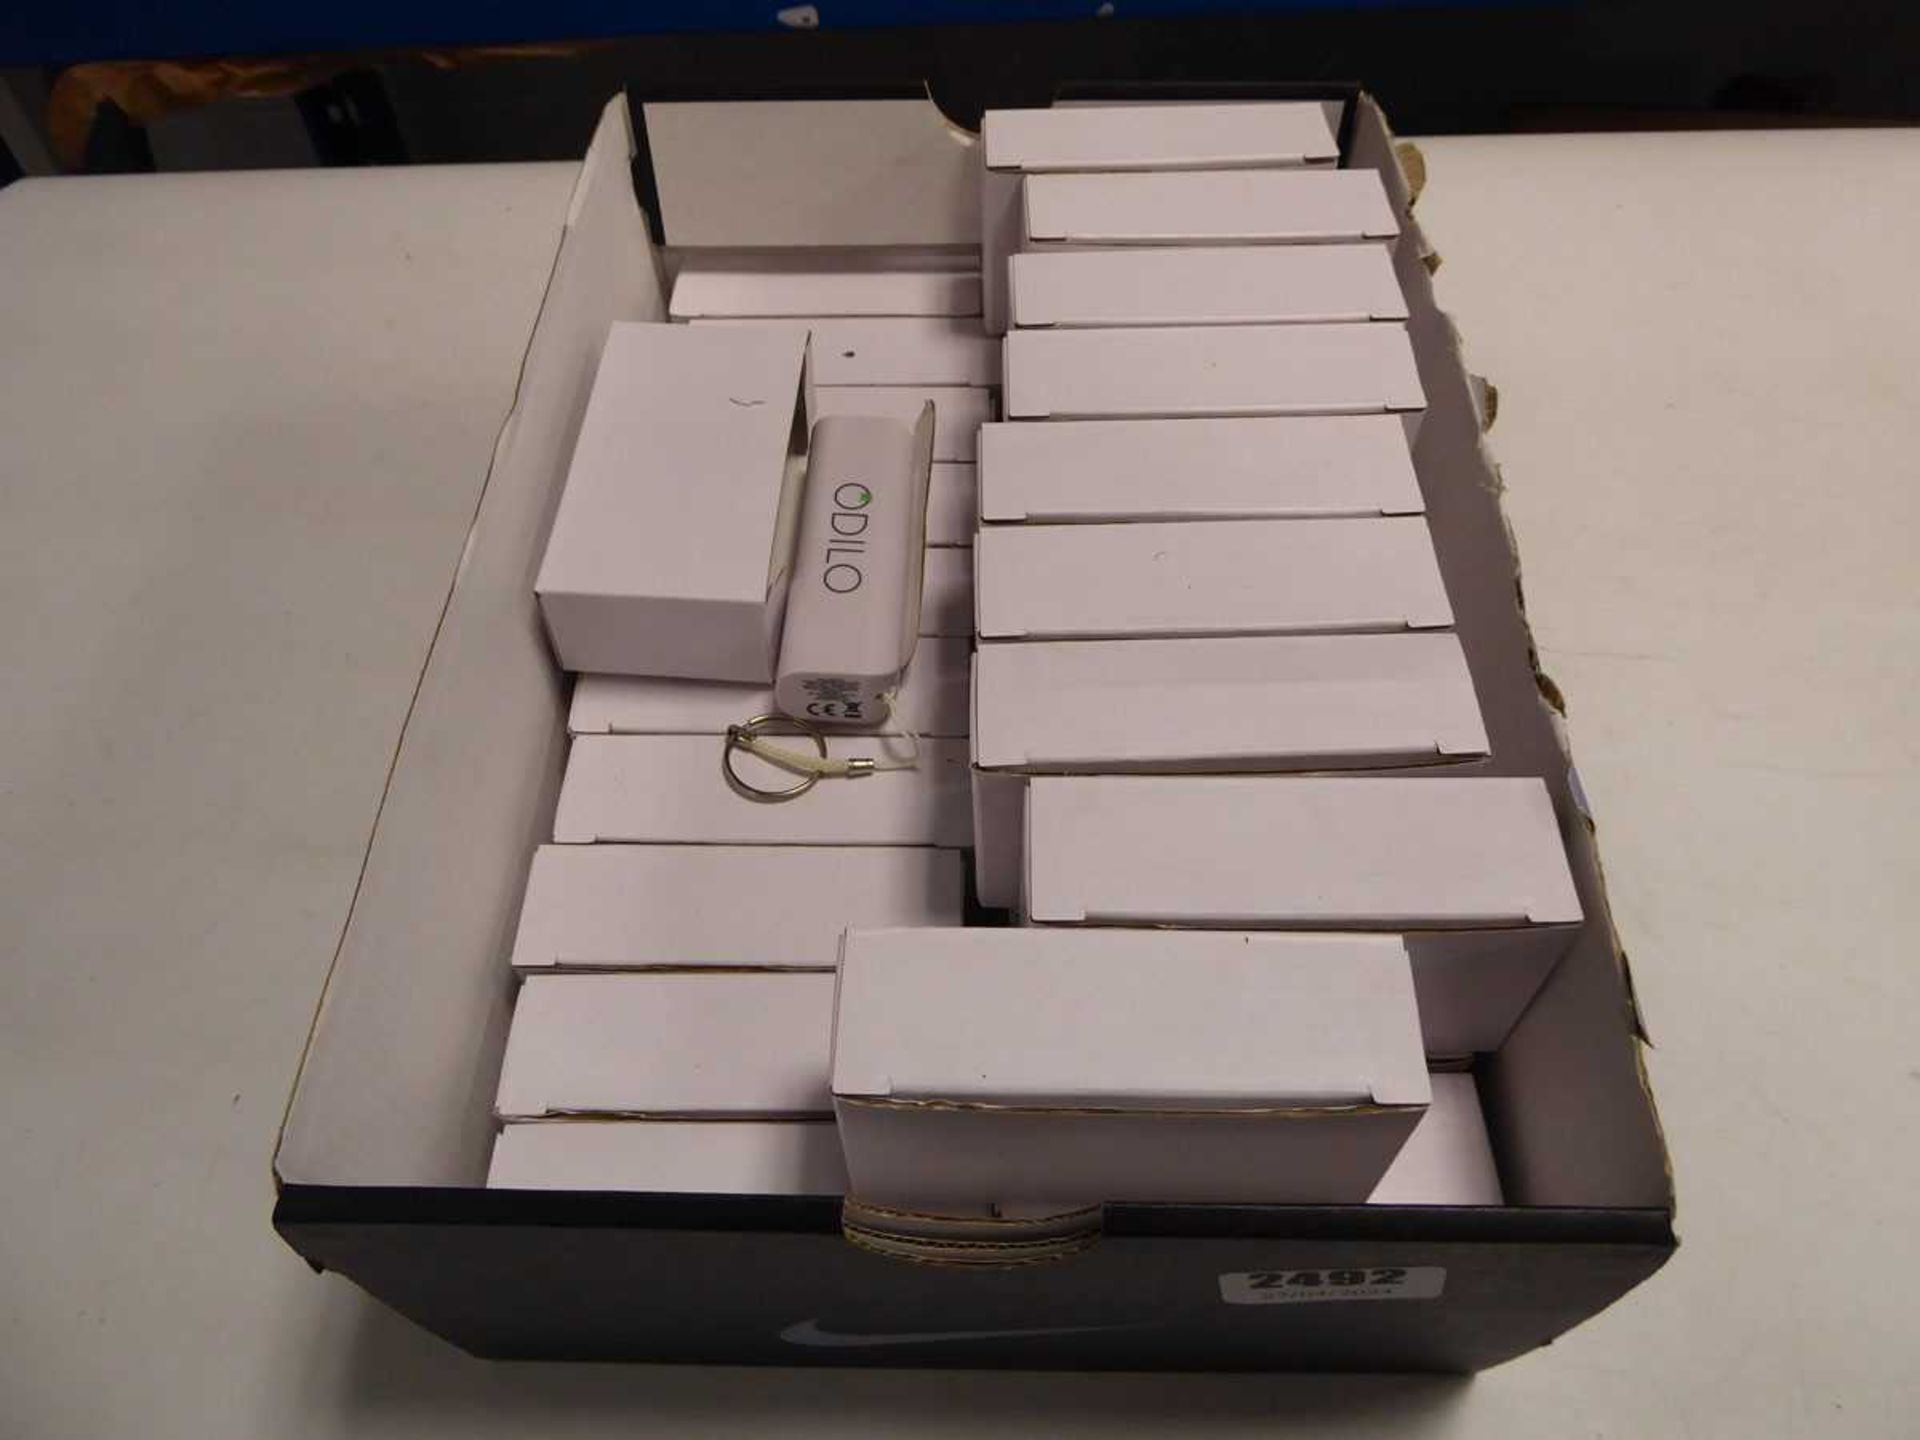 Box of USB power banks